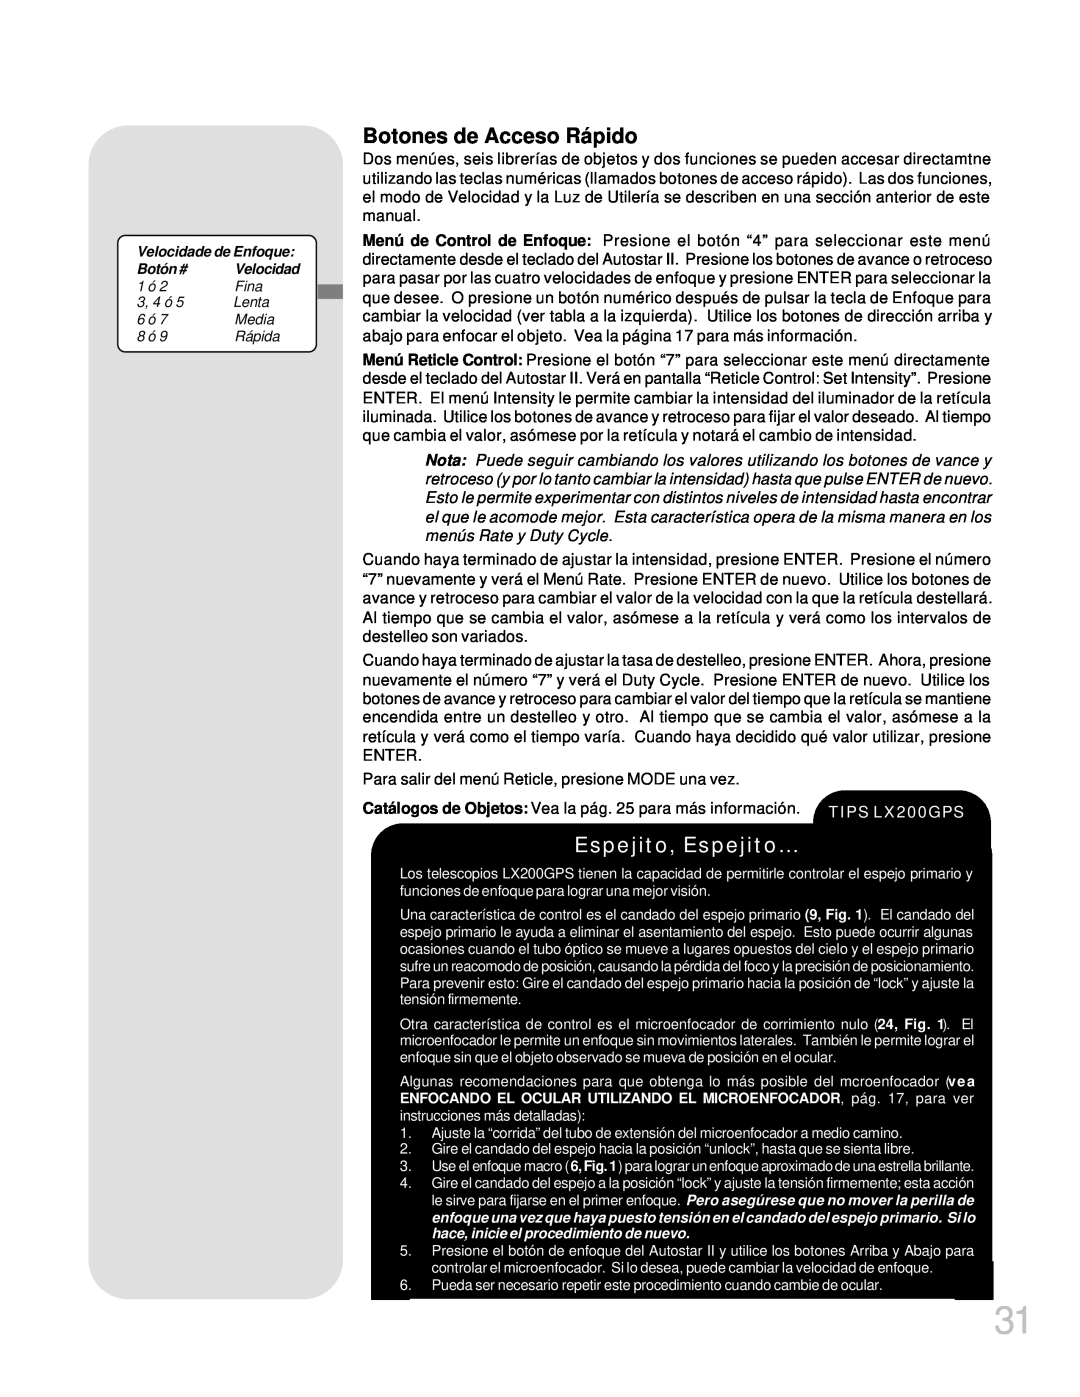 Meade LX200GPS manual Botones de Acceso Rápido, Espejito, Espejito… 